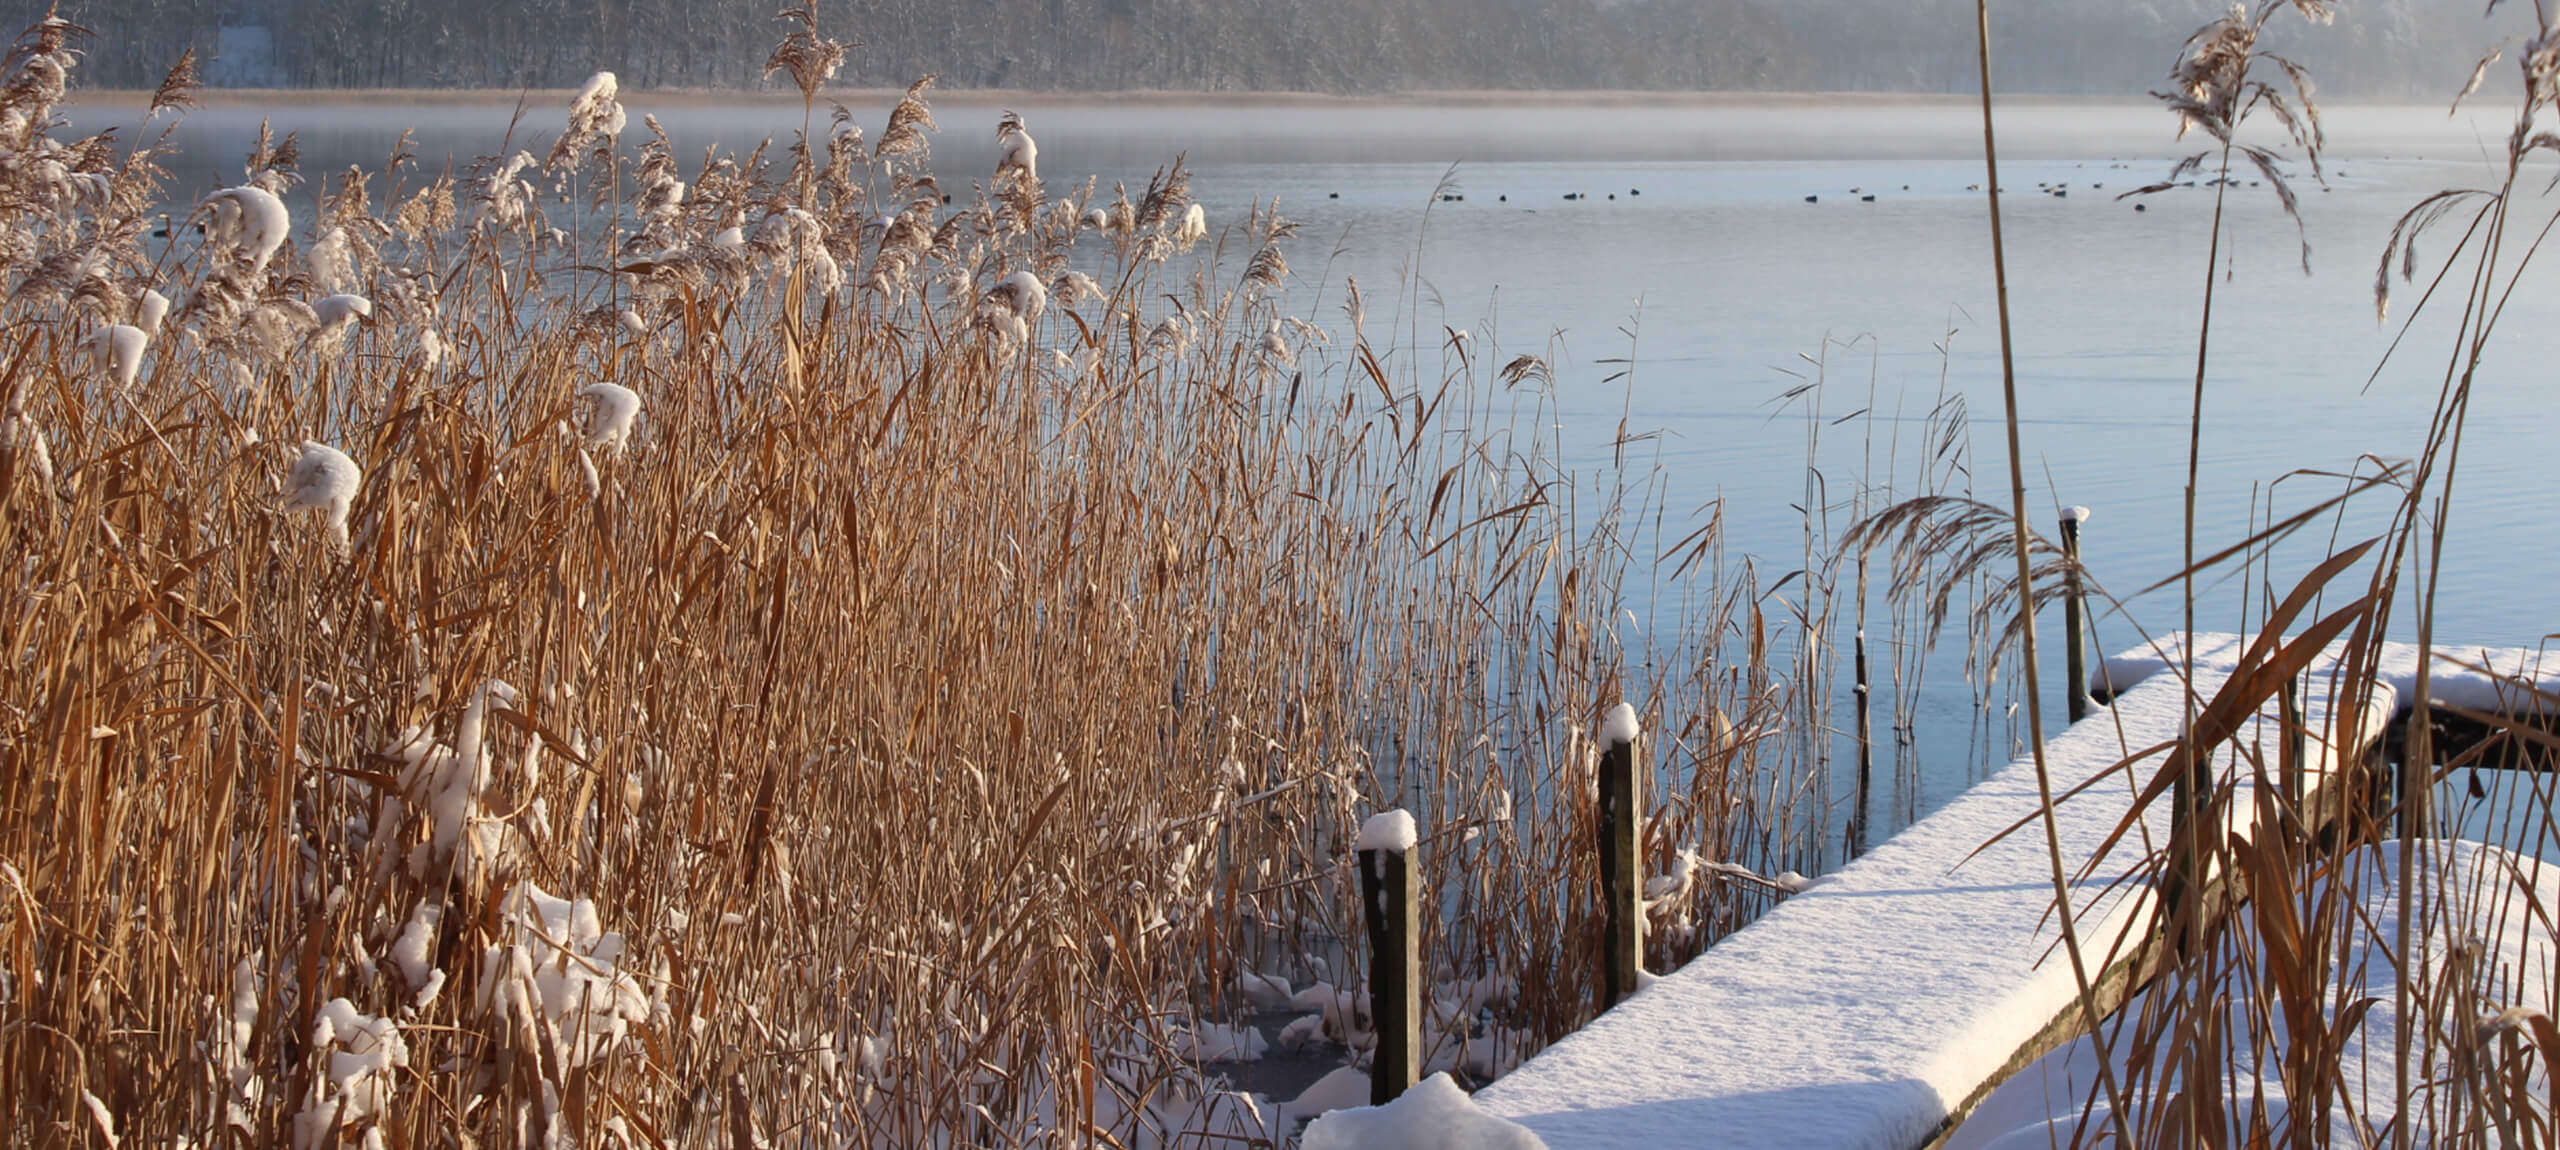 Winterbild an einem See in Lindow. Neujahrswünsche Neujahrswünsche an Lindowerfreundinnen und -freunde